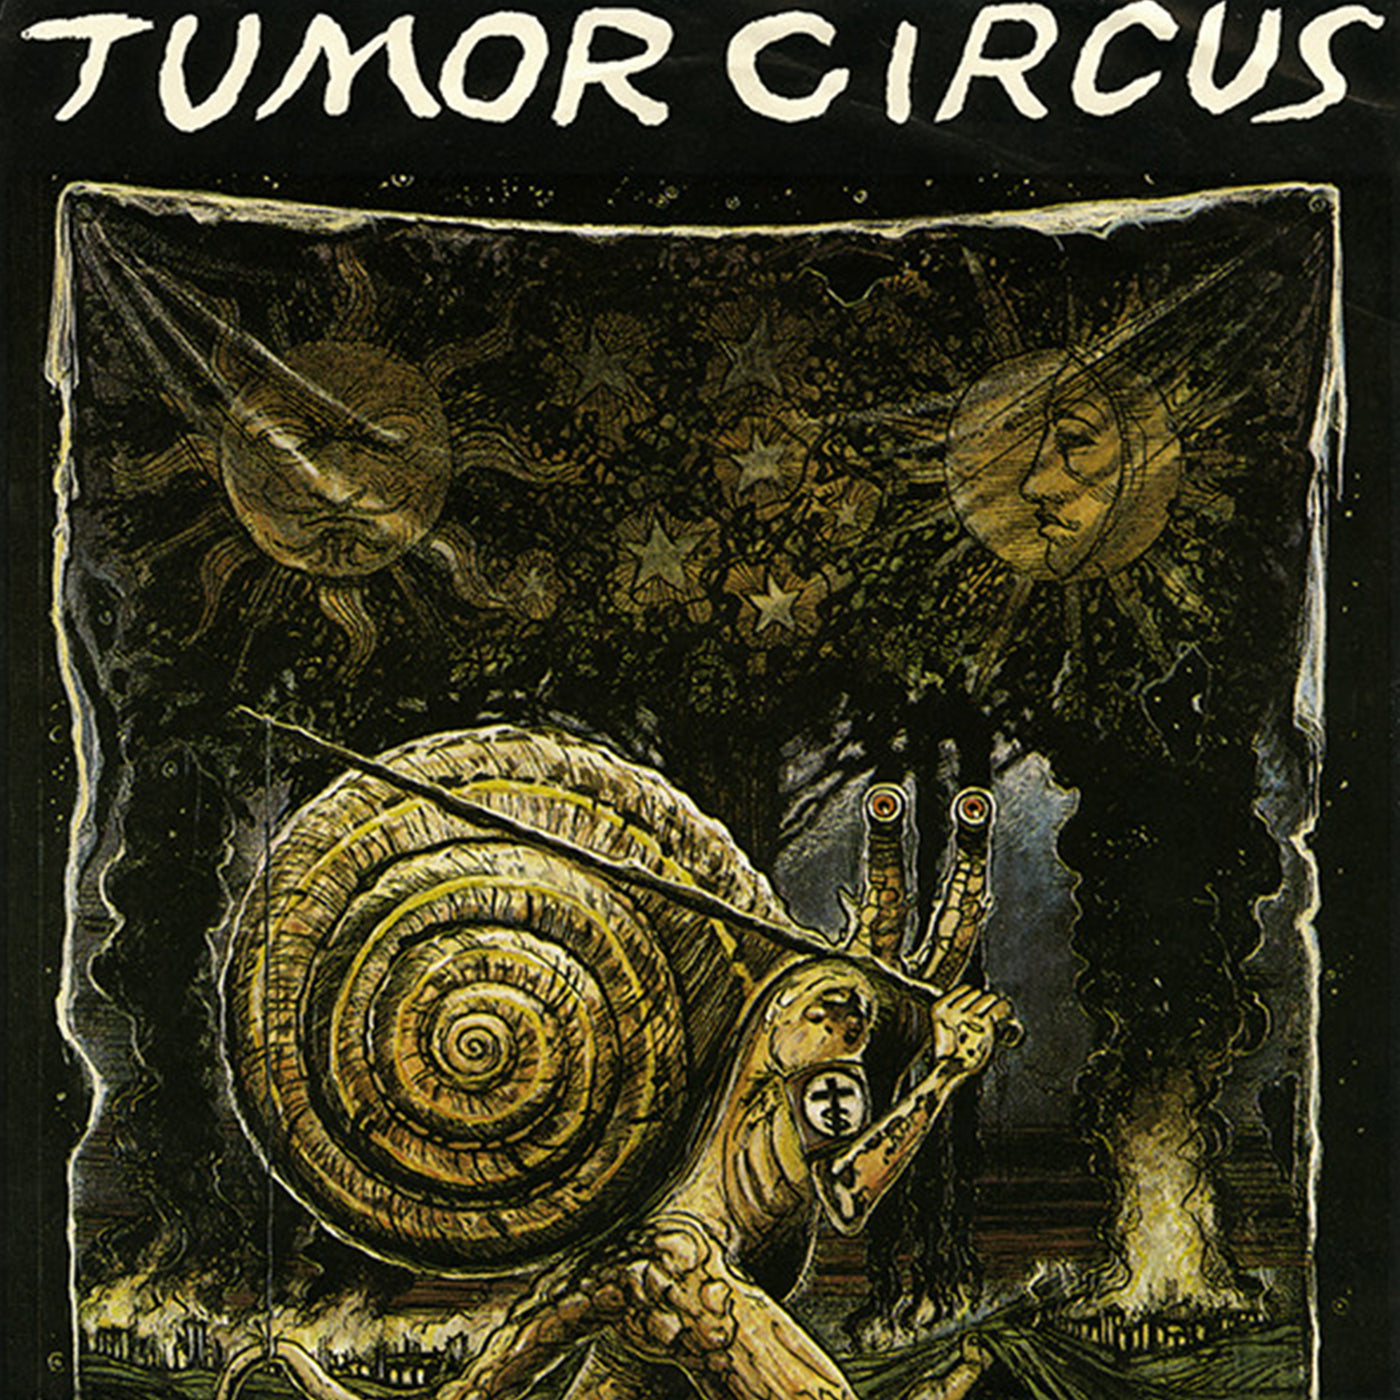 v102 - Tumor Circus - "Meathook Up My Rectum"